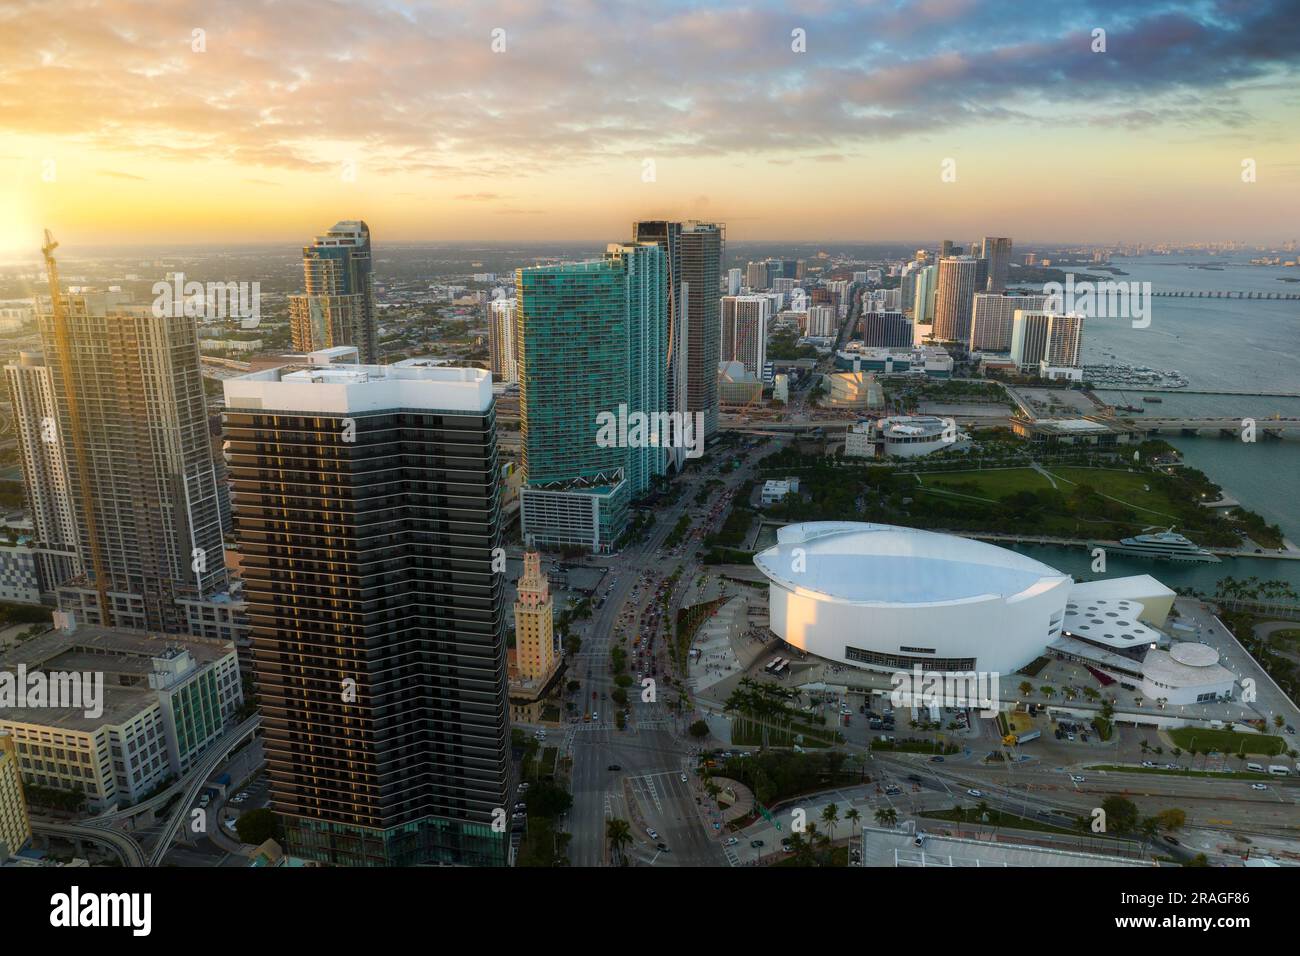 Abendliche Stadtlandschaft im Stadtteil Miami Brickell in Florida, USA. Skyline mit hohen Wolkenkratzern in moderner amerikanischer Megapolis. Stockfoto